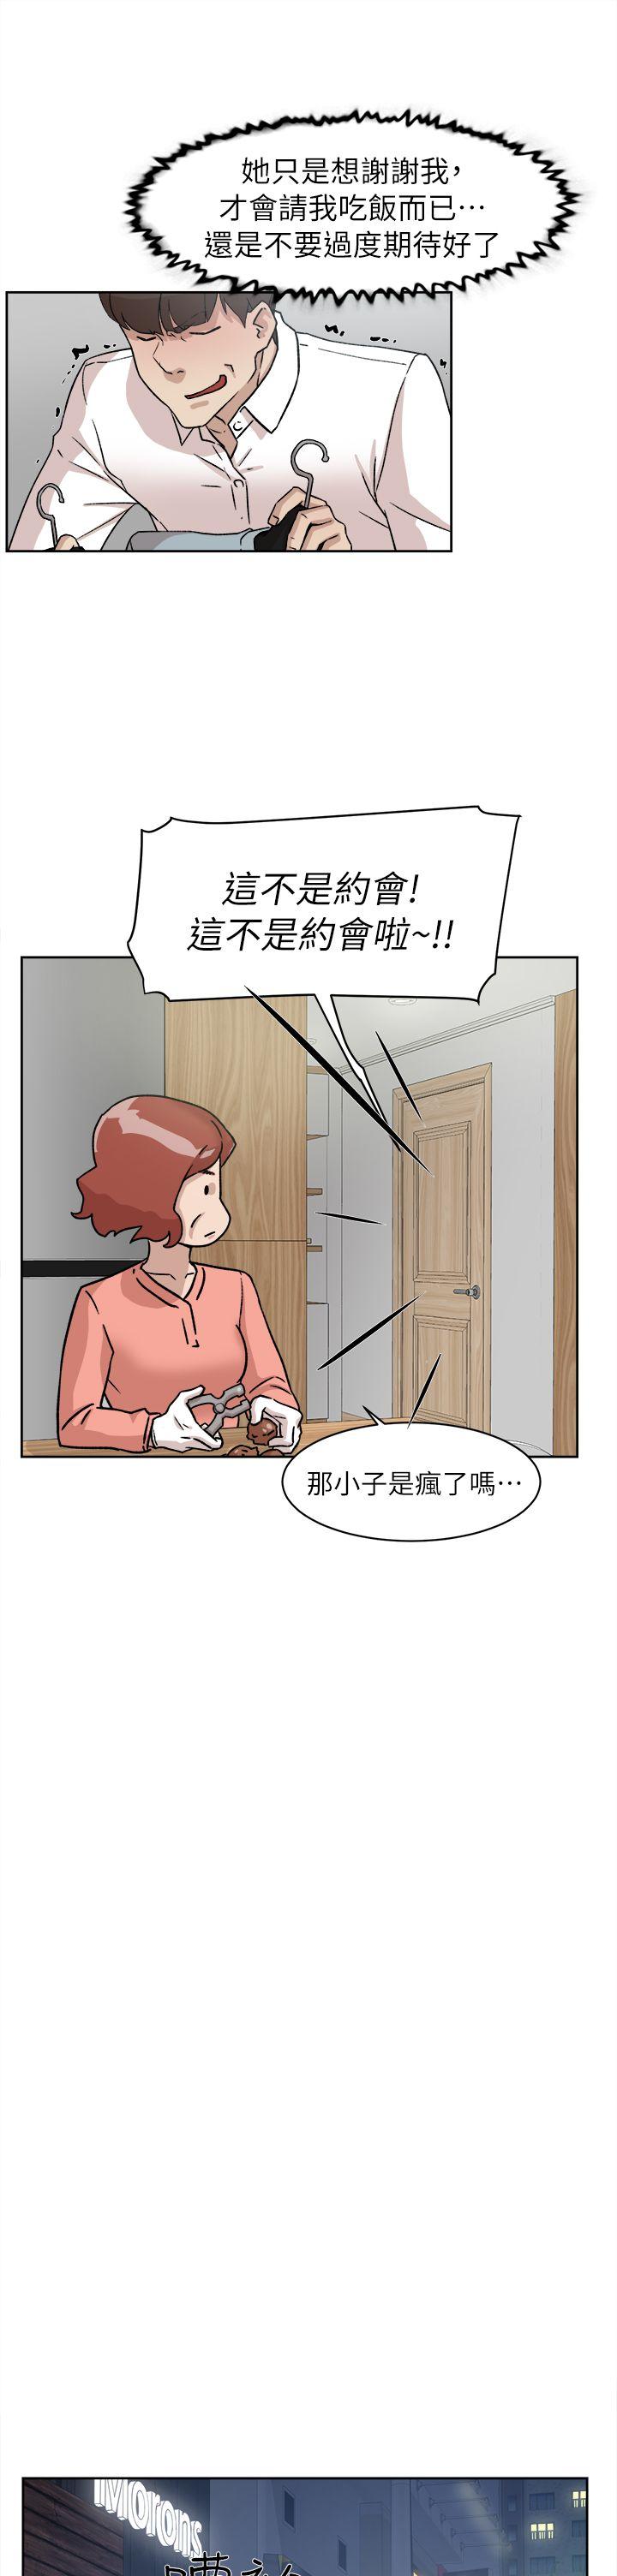 韩国污漫画 她的高跟鞋(無刪減) 第54话-可以找地方换衣服吗? 4